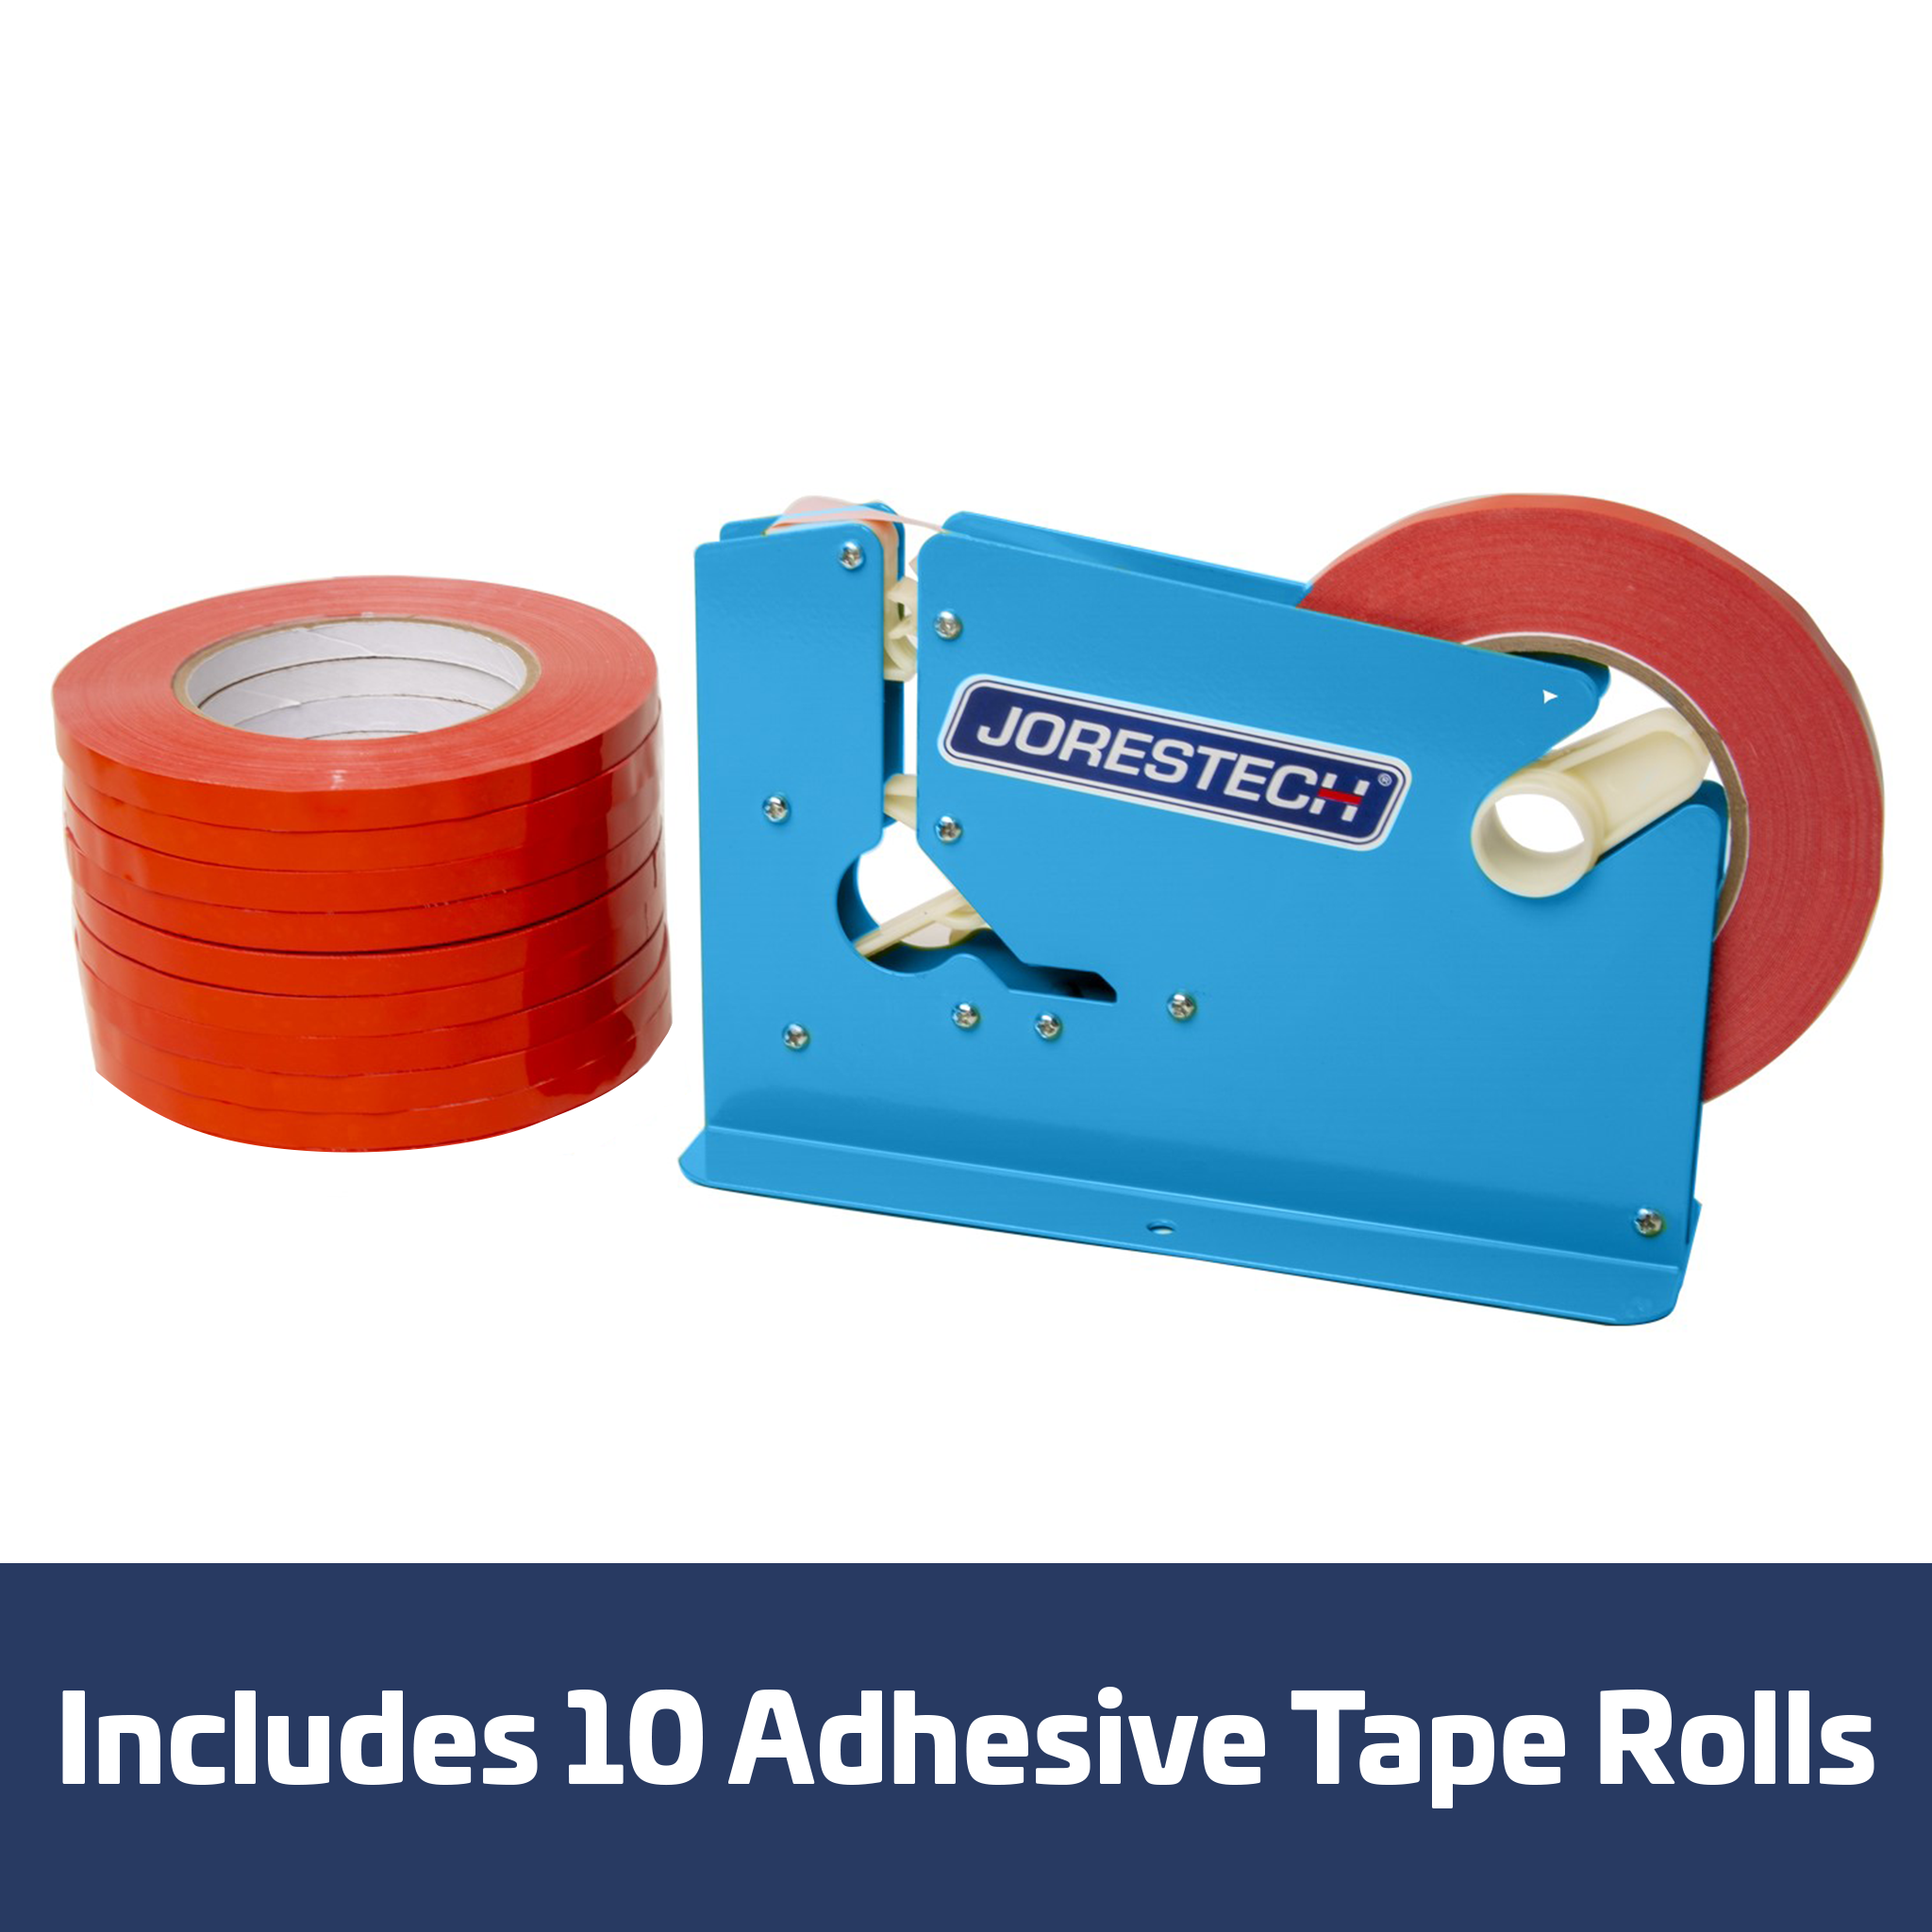 Semi Automatic thermo adhesive tape Dispenser